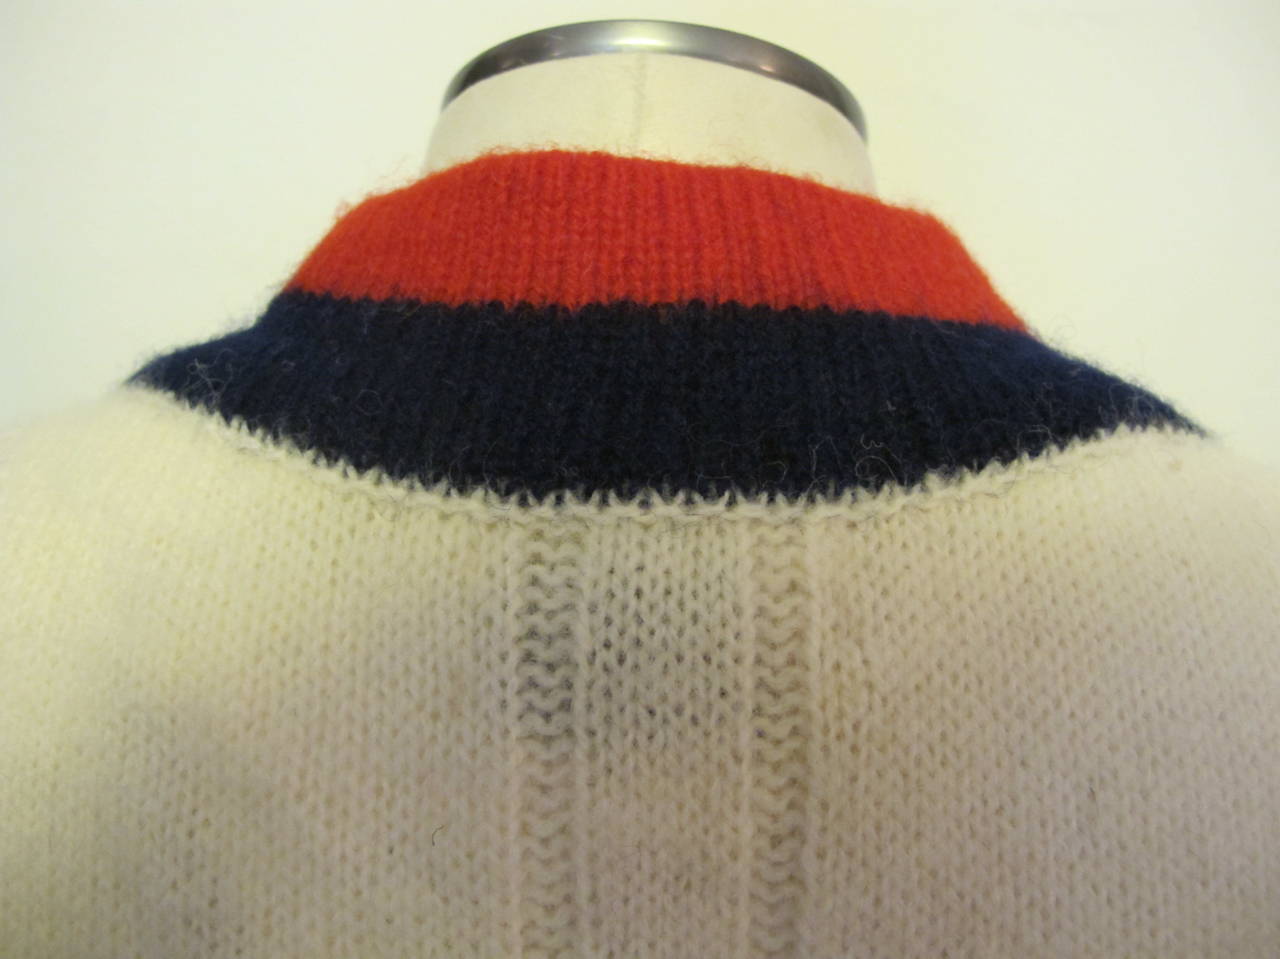 New Pringle 1950's Sweater Dress for Robert Kirk, Ltd. For Sale 2